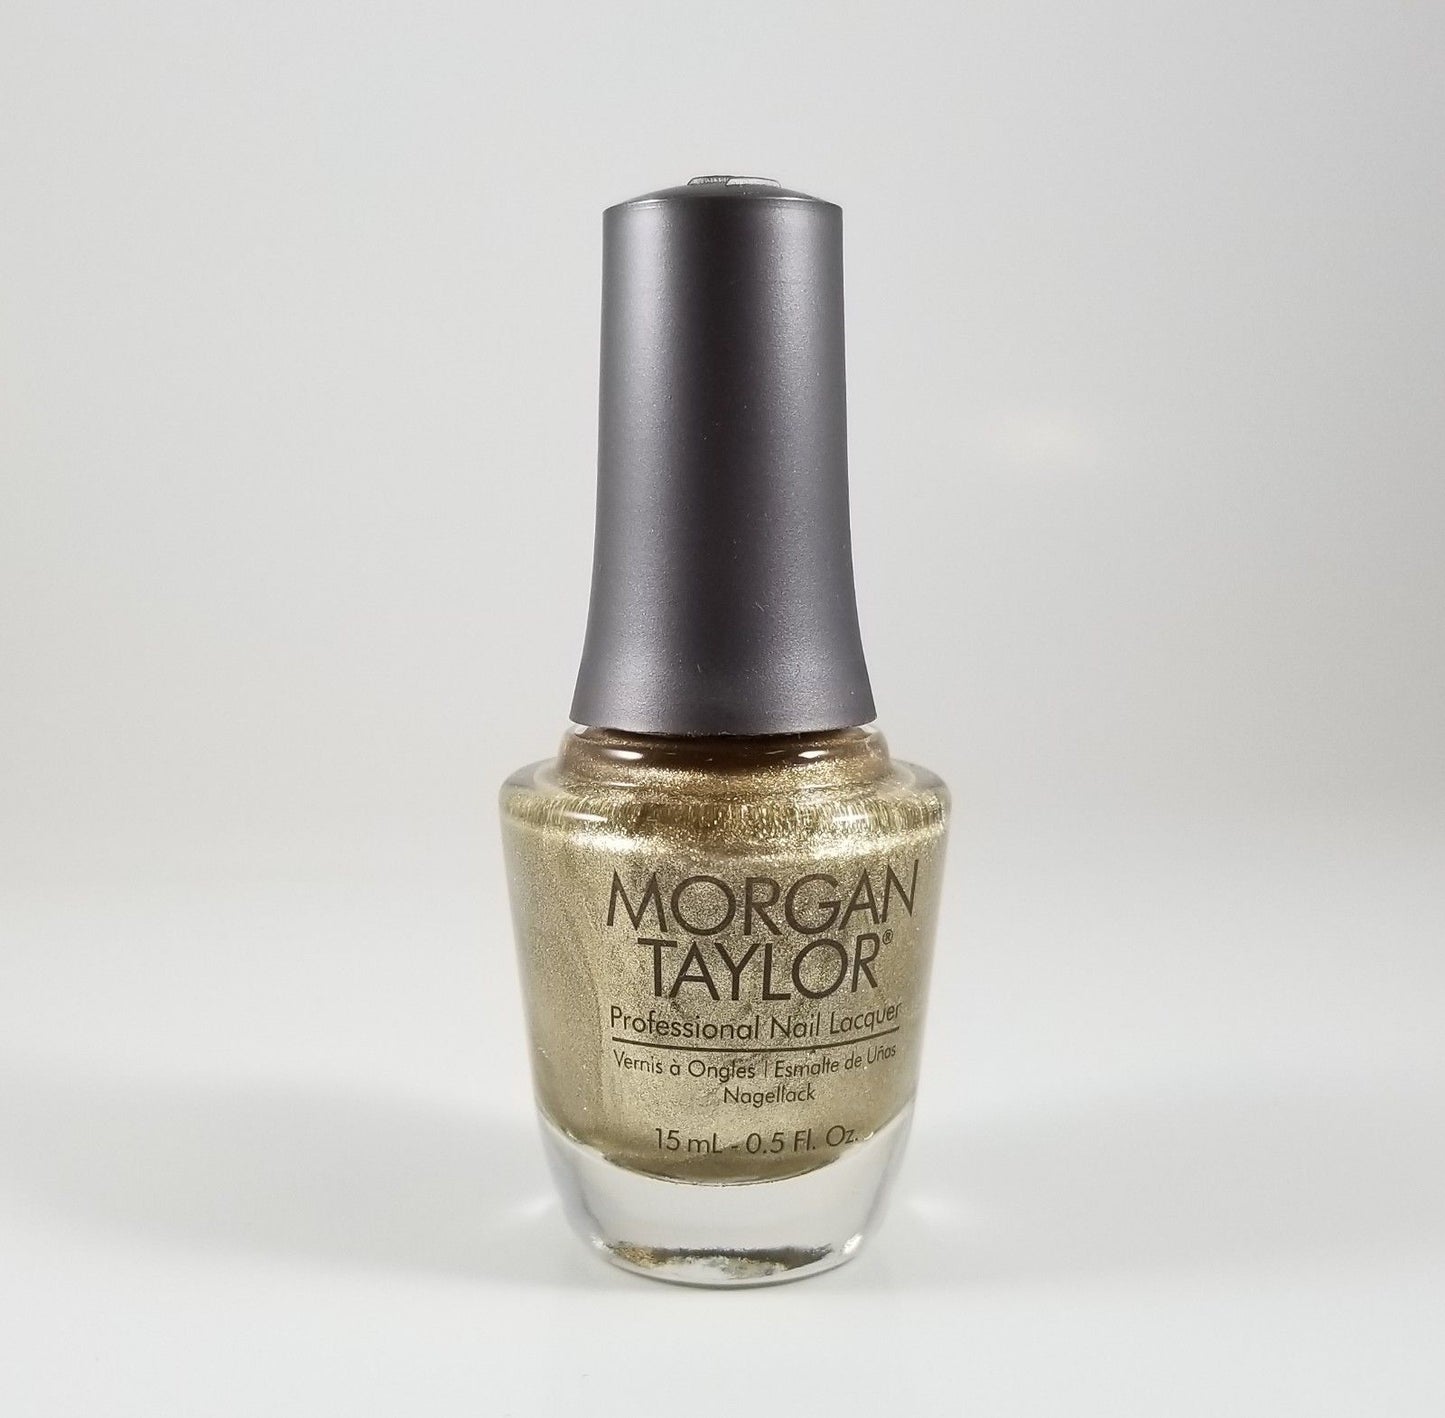 Harmony Morgan Taylor  Manicure Pedicure Nail Lacquer 0.5oz/15mL